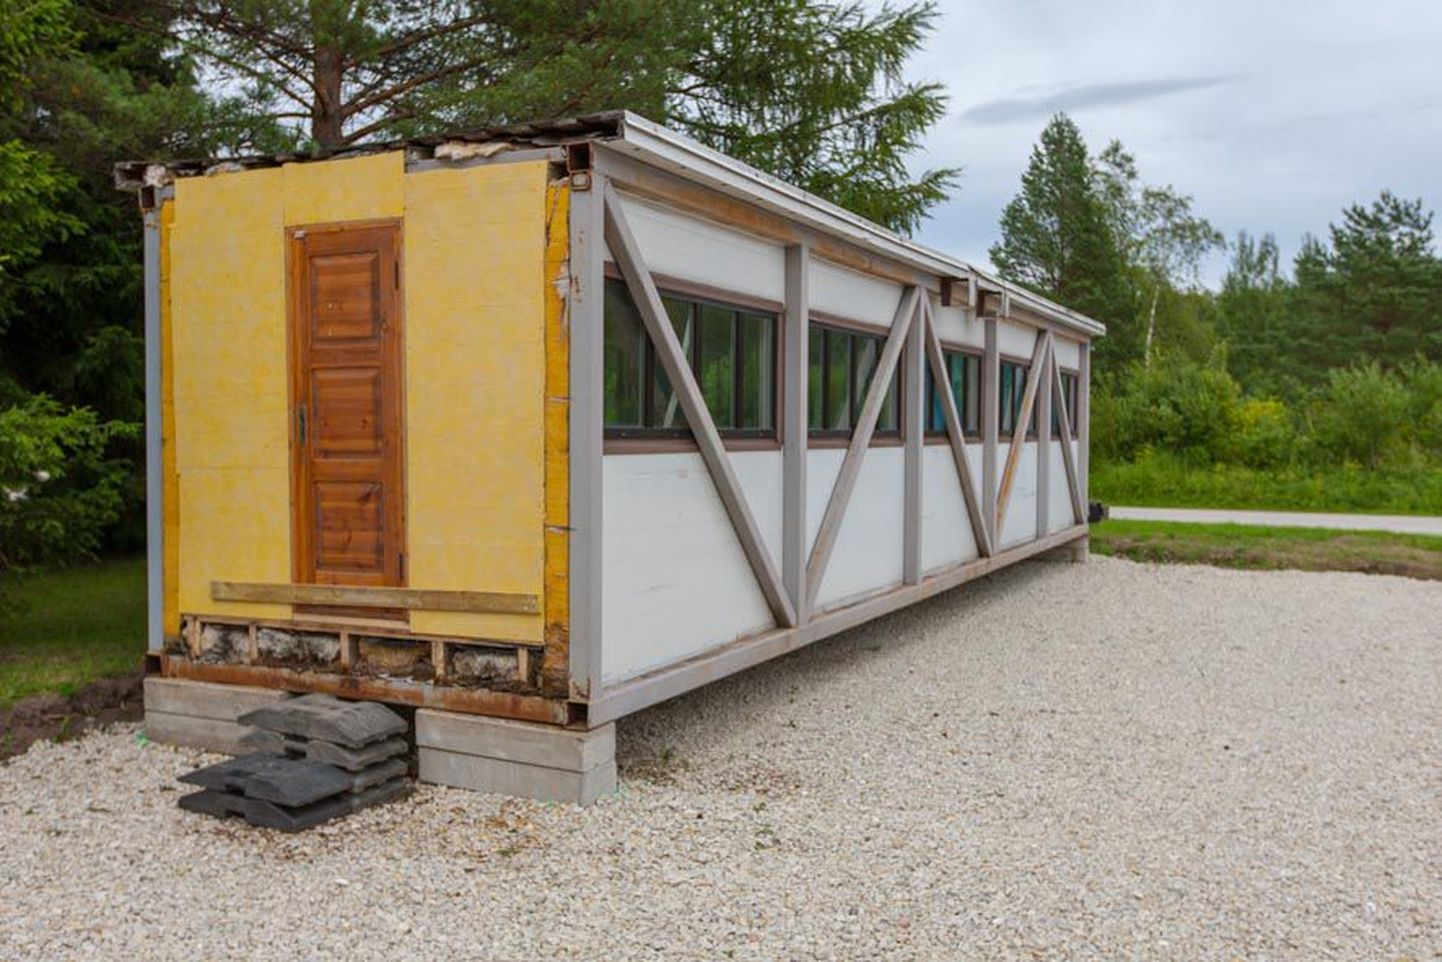 Pärast 3. juulit, kui Paide spordi- ja tervisekeskuse nõukogu otsustas anda soojaku Kesk-Eesti õppesõiduväljakule, on üks soojaku otsaseintest kinni ehitatud.